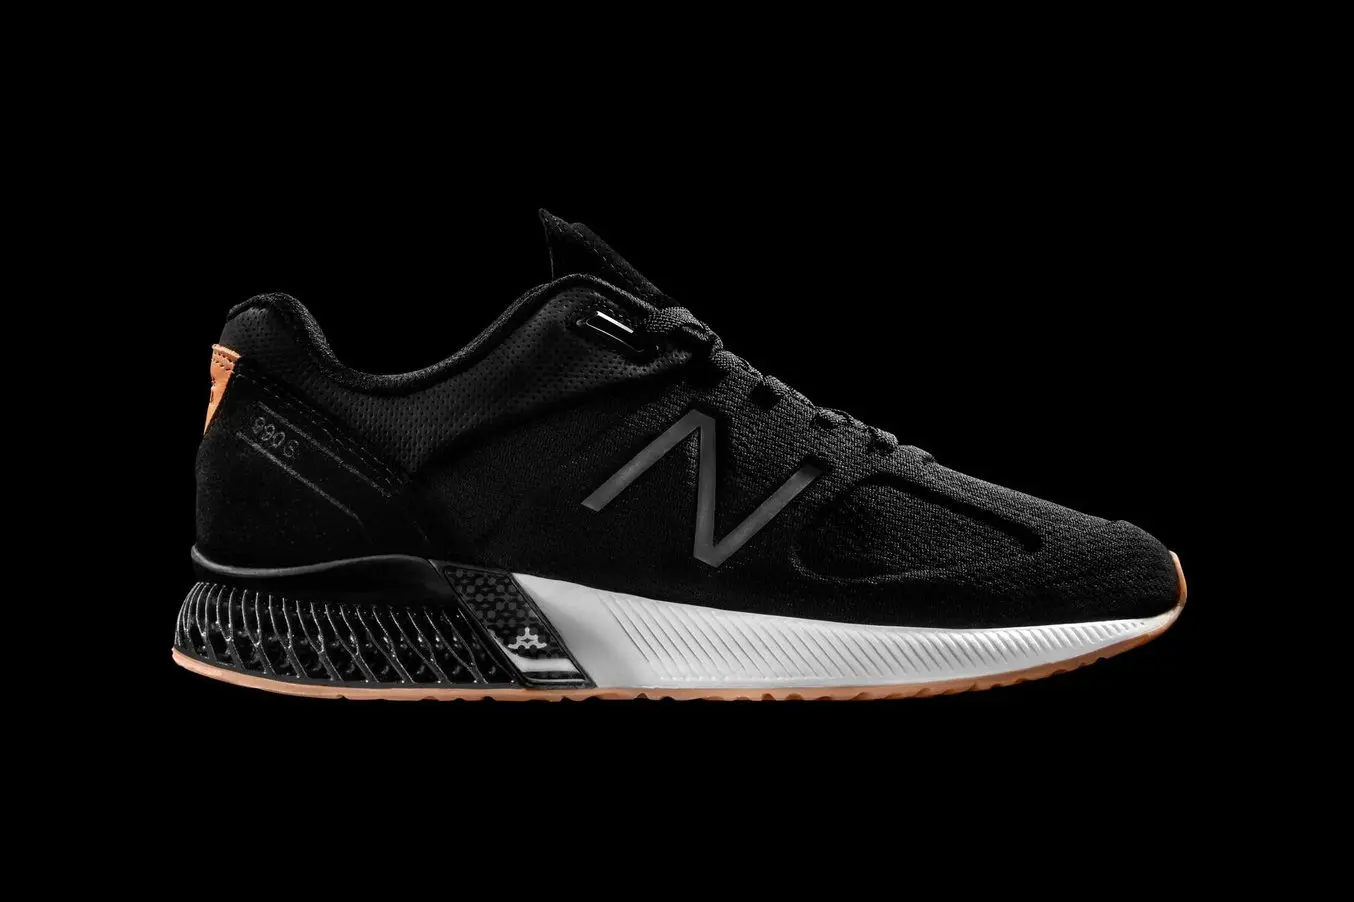 Schuhe von New Balance mit Rebound Resin, einem silikonähnlichen 3D-Druckmaterial.